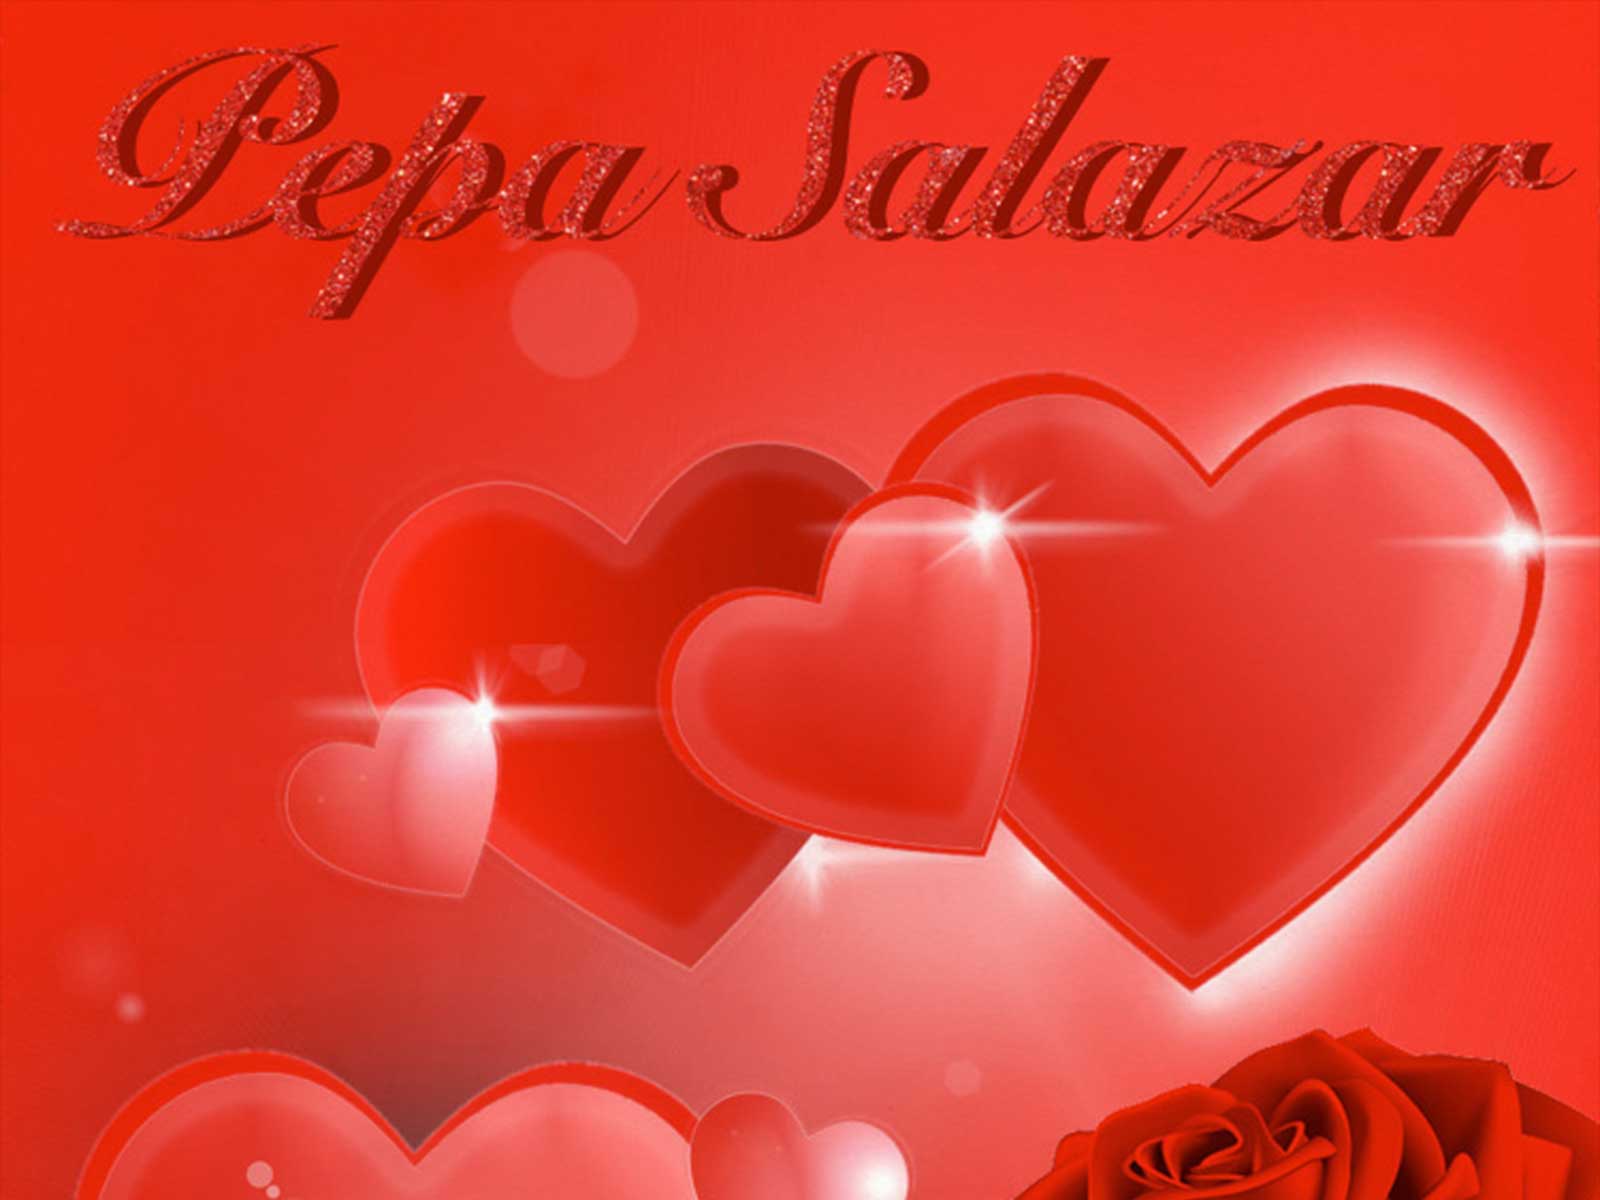 REMINDER: Esta tarde tienes una cita romántica con Pepa Salazar en EKSEPTION